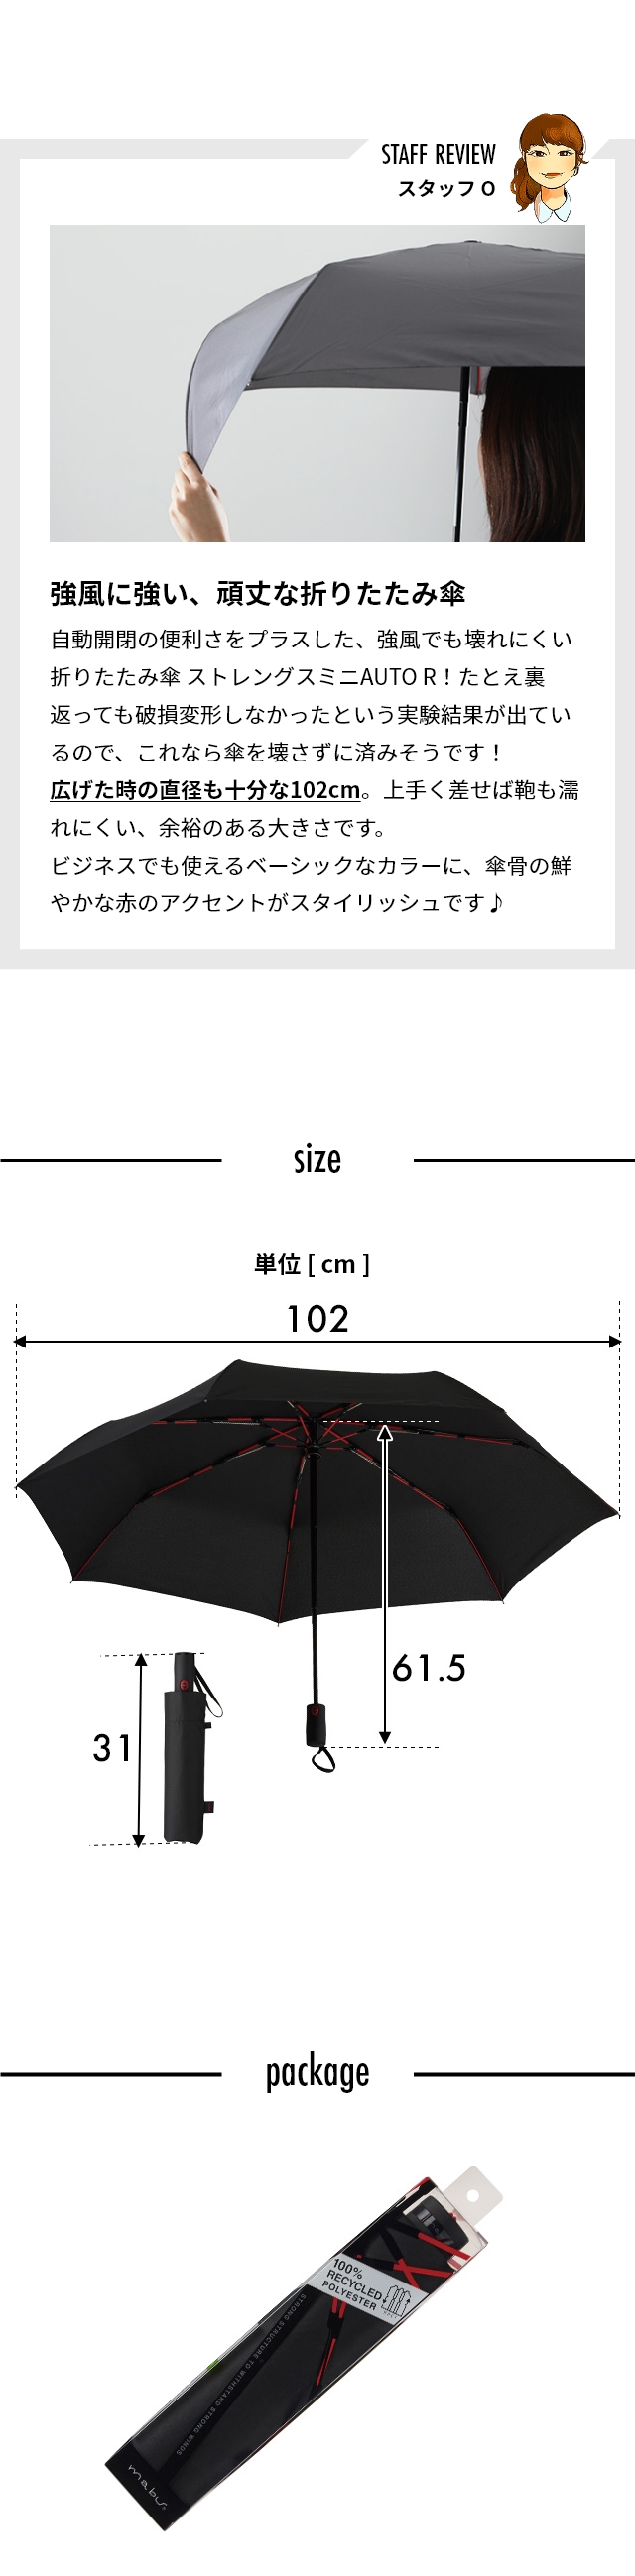 マブ 折り畳み傘 高強度折りたたみ傘 ストレングスミニAUTO R SMV-4180